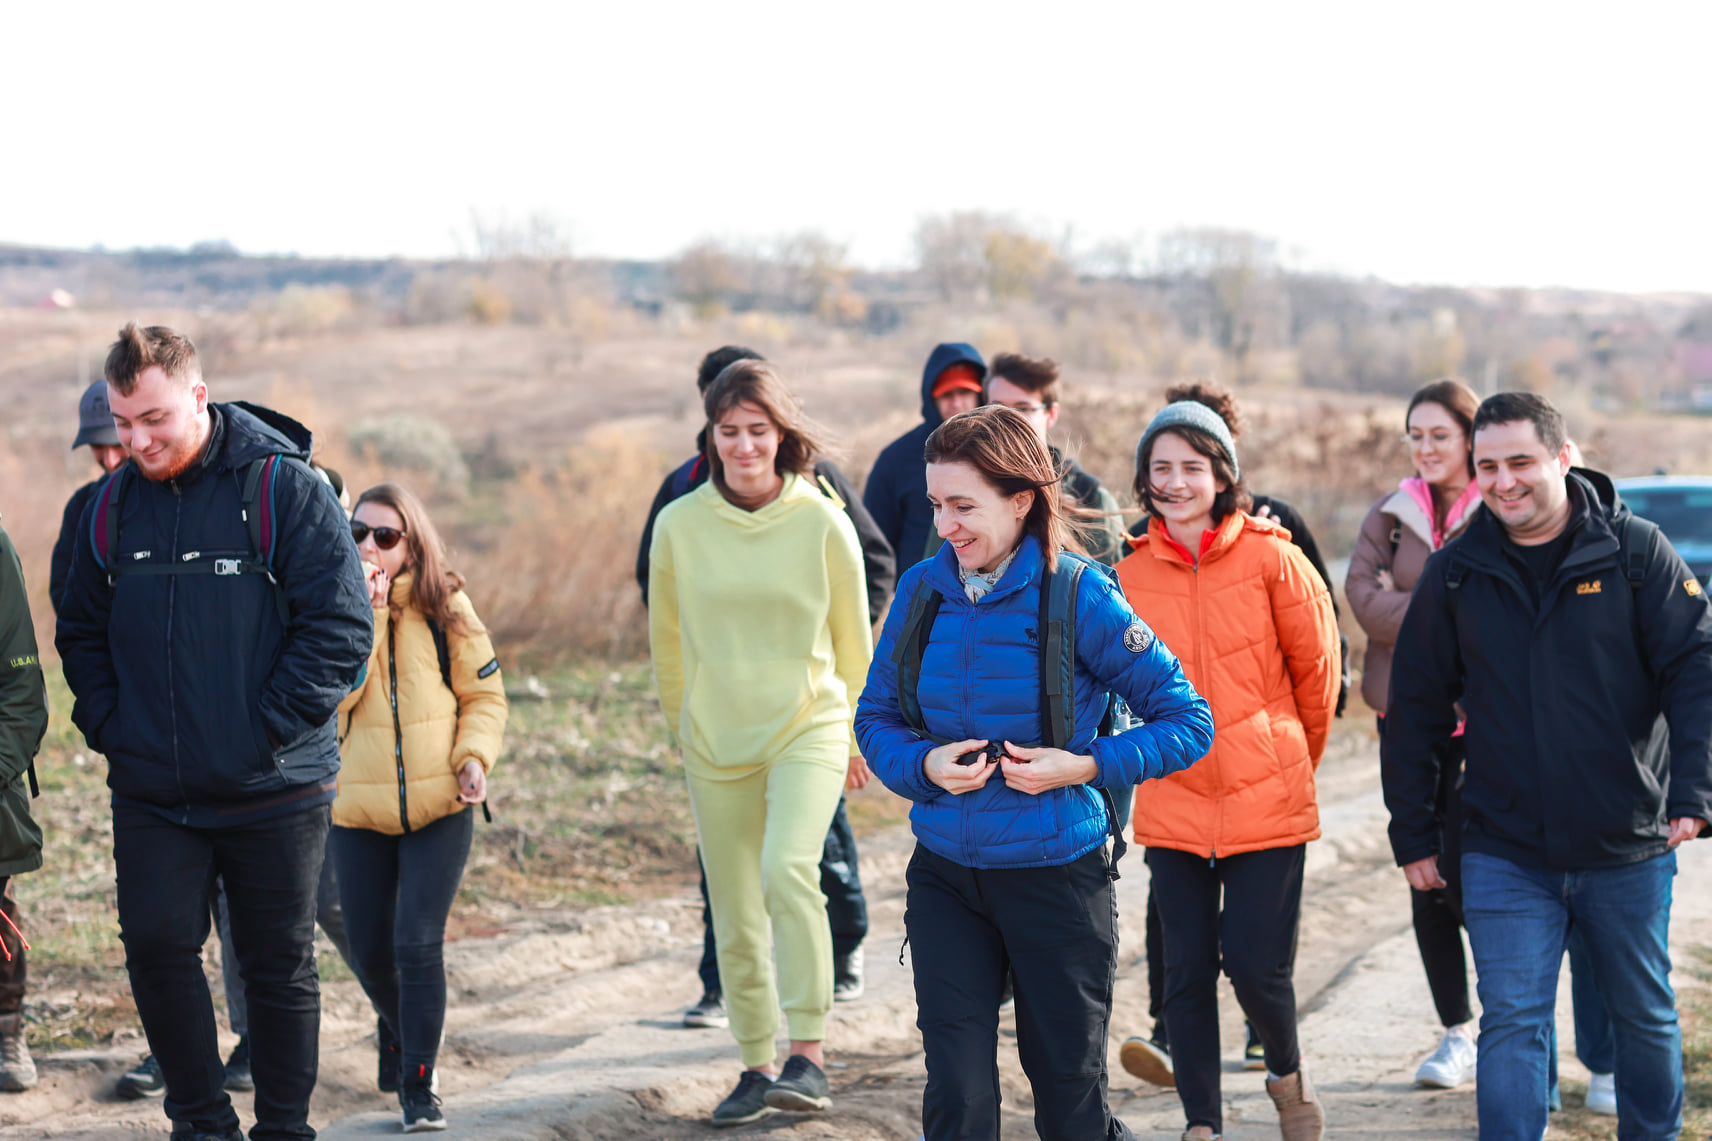 Санду отправилась в поход с молодыми защитниками окружающей среды (ФОТО)